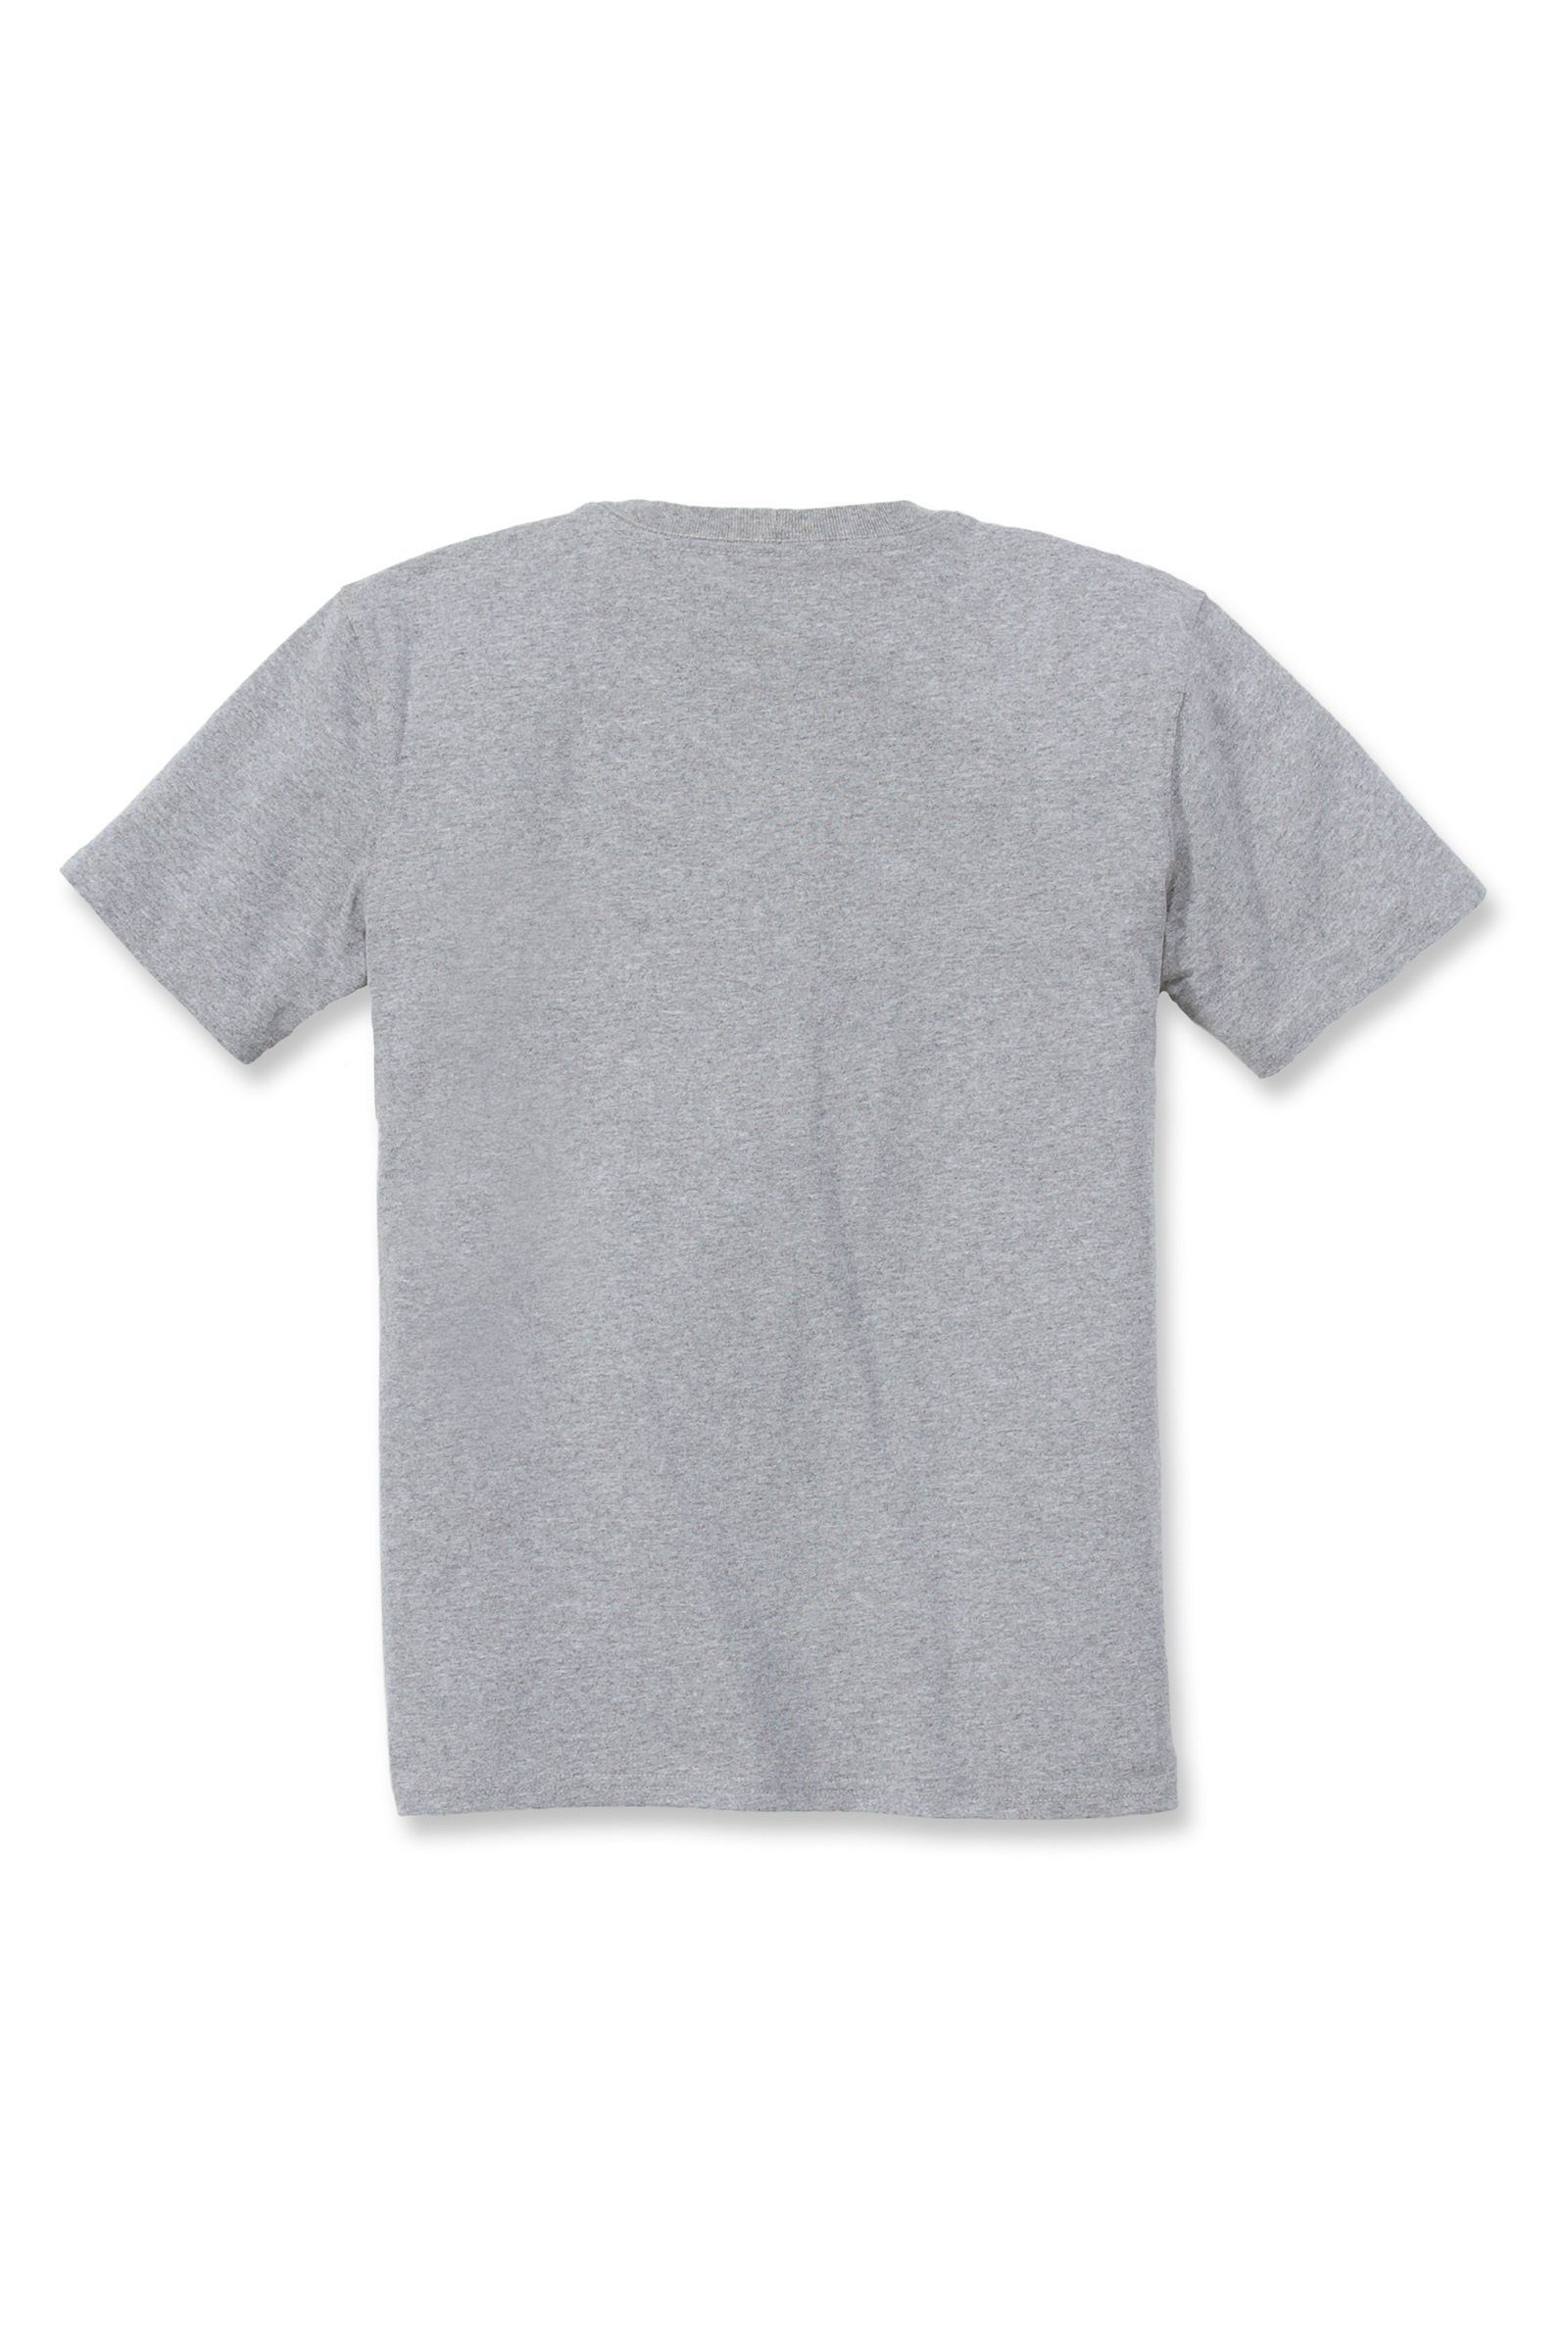 Carhartt T-Shirt Short-Sleeve Heavyweight grey Loose Adult Carhartt Fit T-Shirt Damen heather Pocket